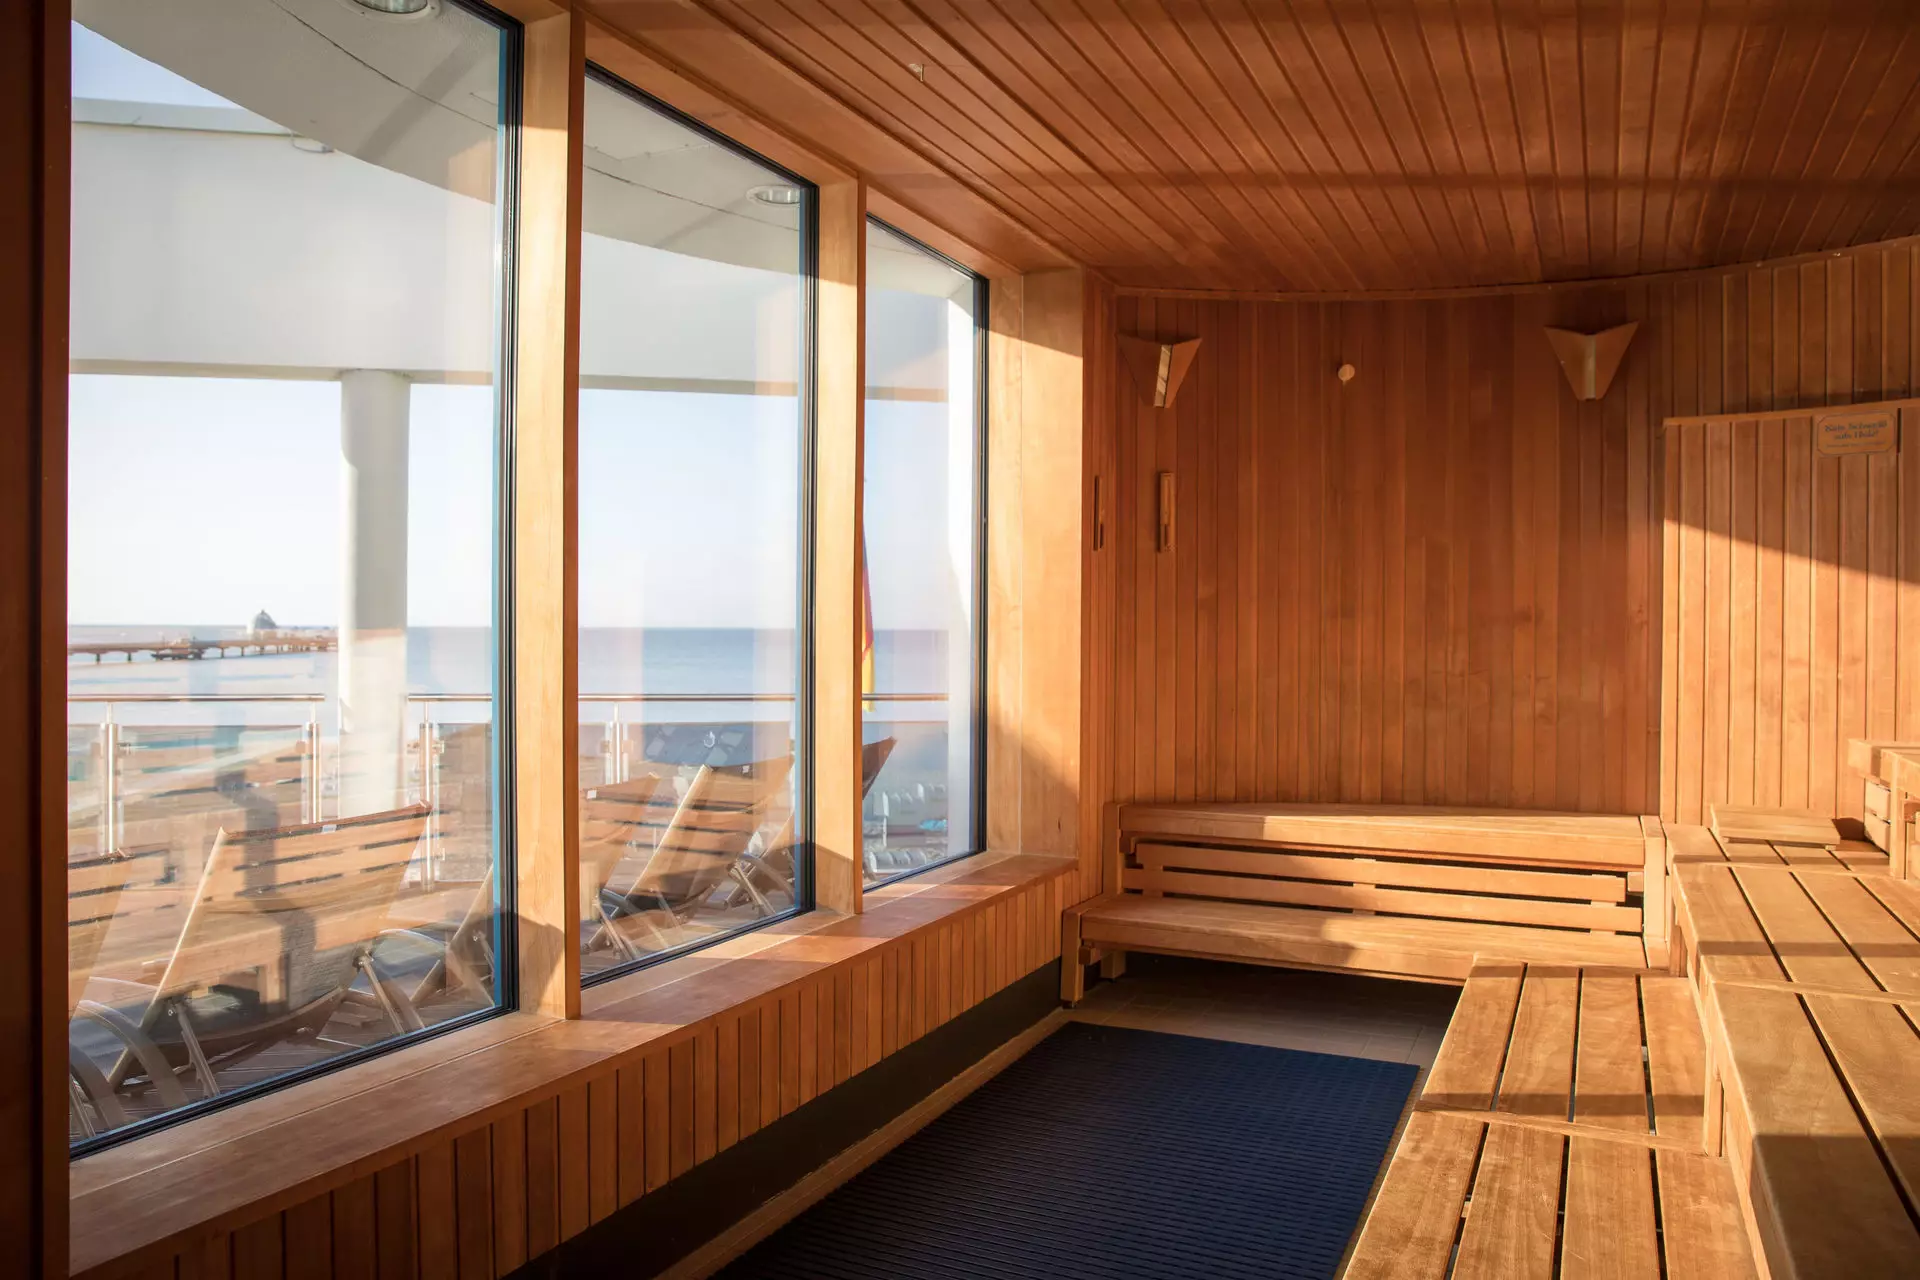 Saunaraum mit Holzwänden und Fenstern mit Blick auf den Strand